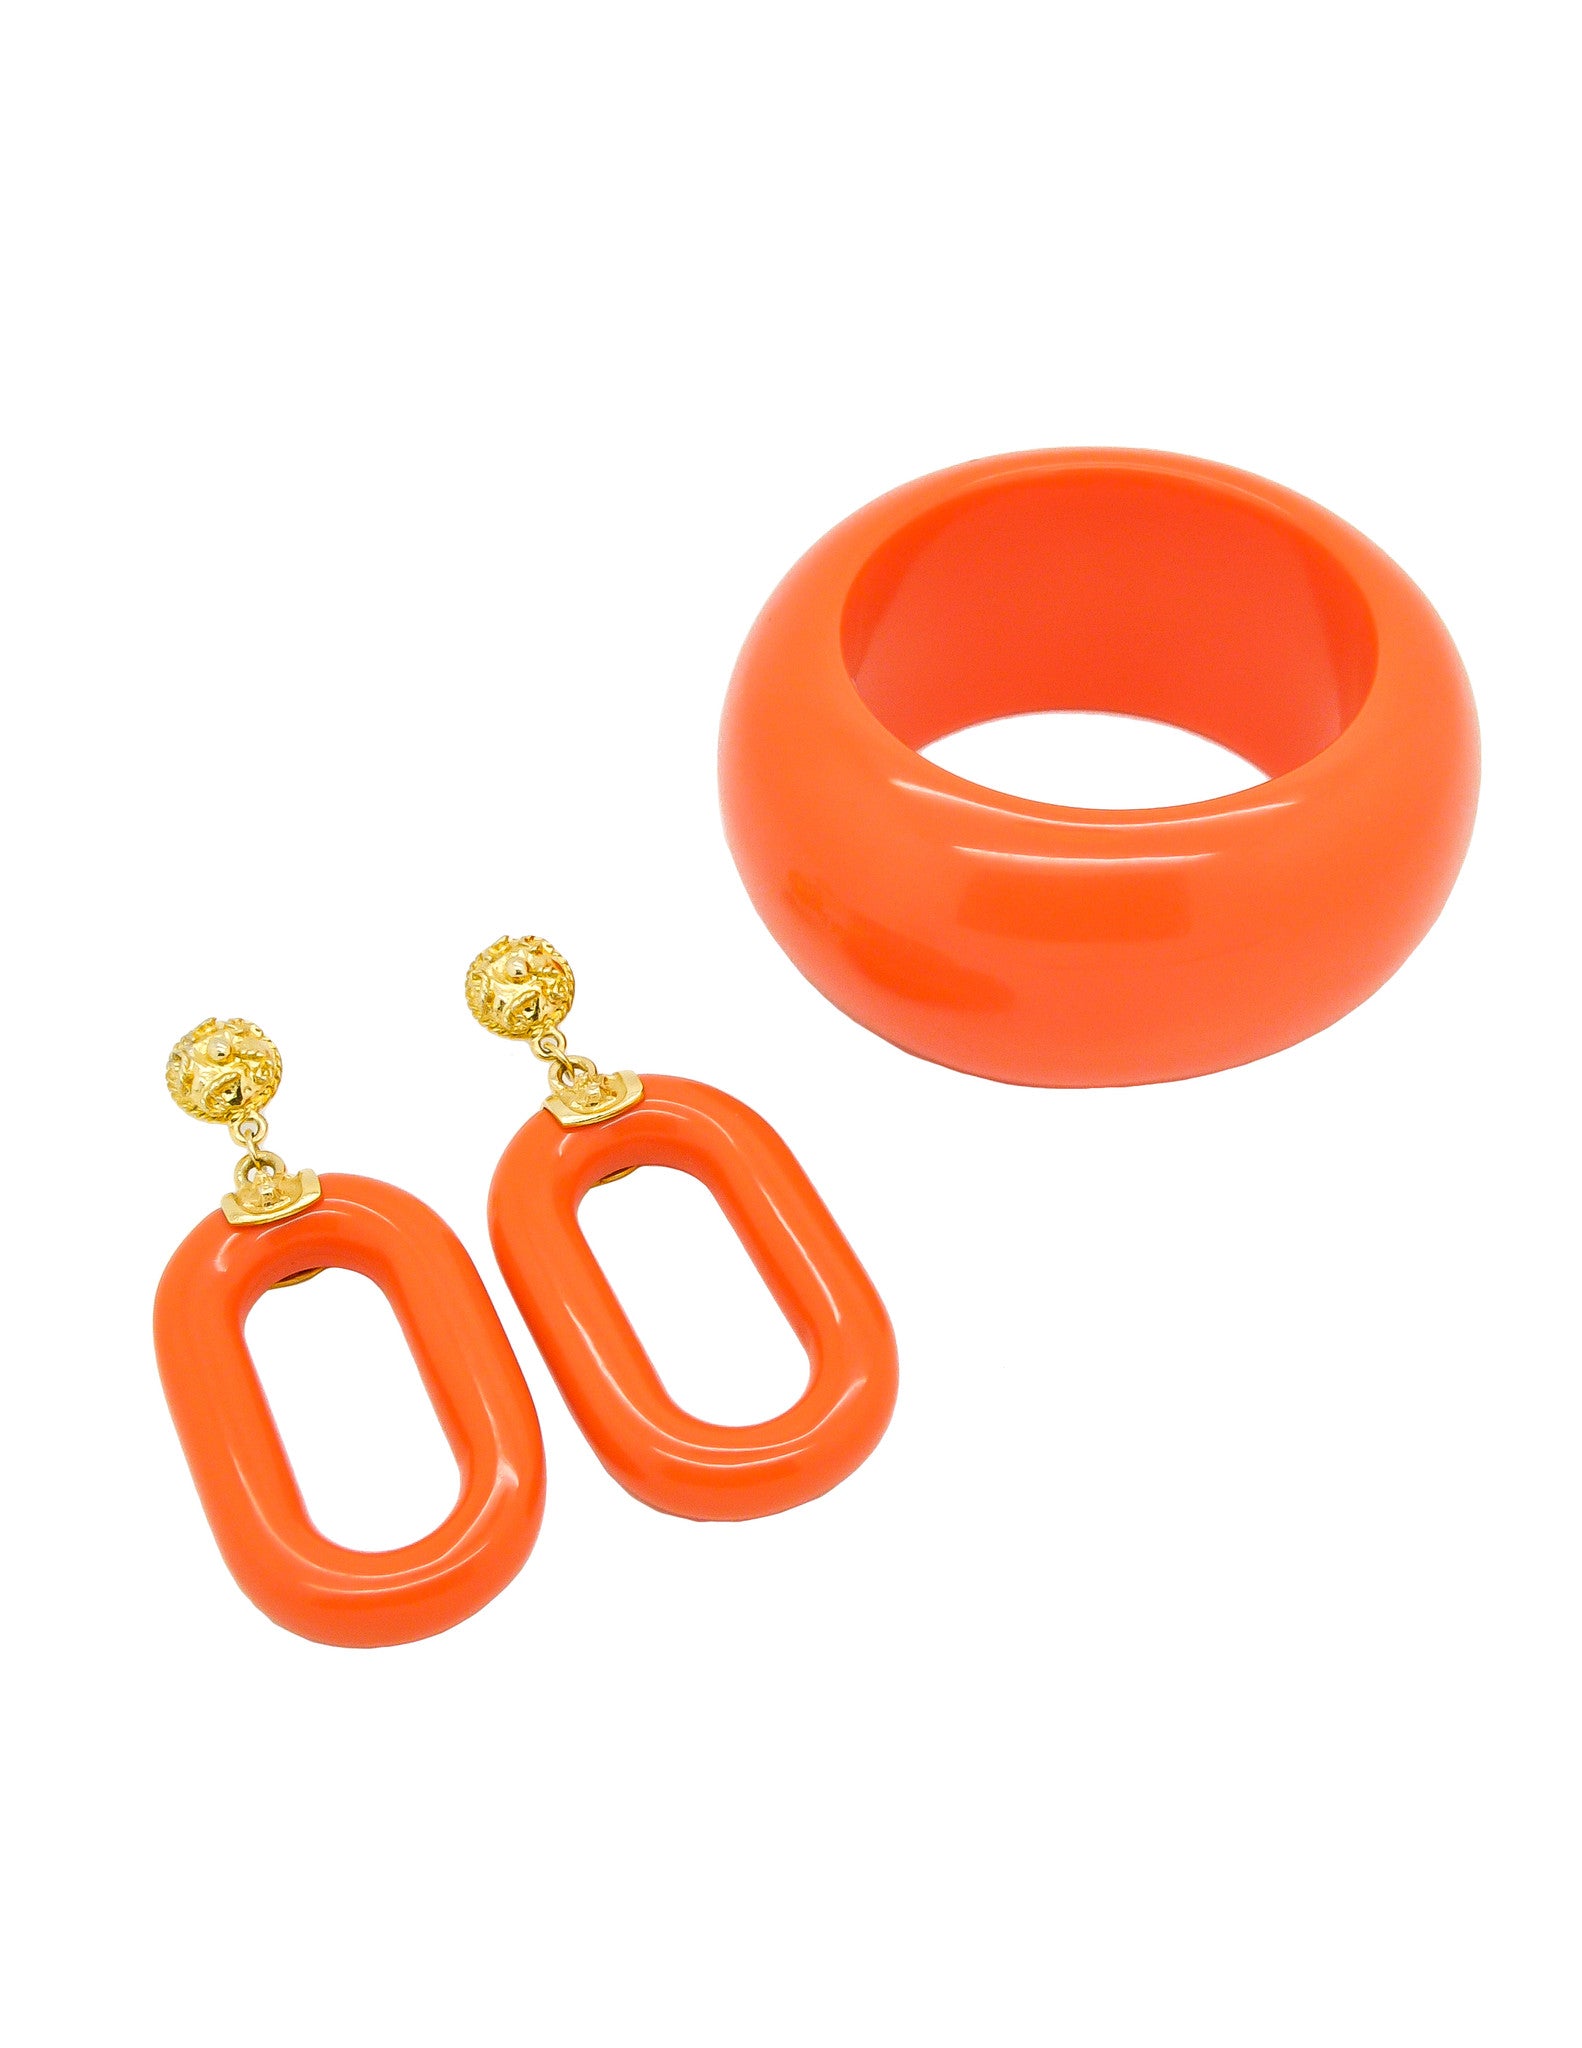 Kenneth Jay Lane Vintage Orange Bracelet and Earring Set